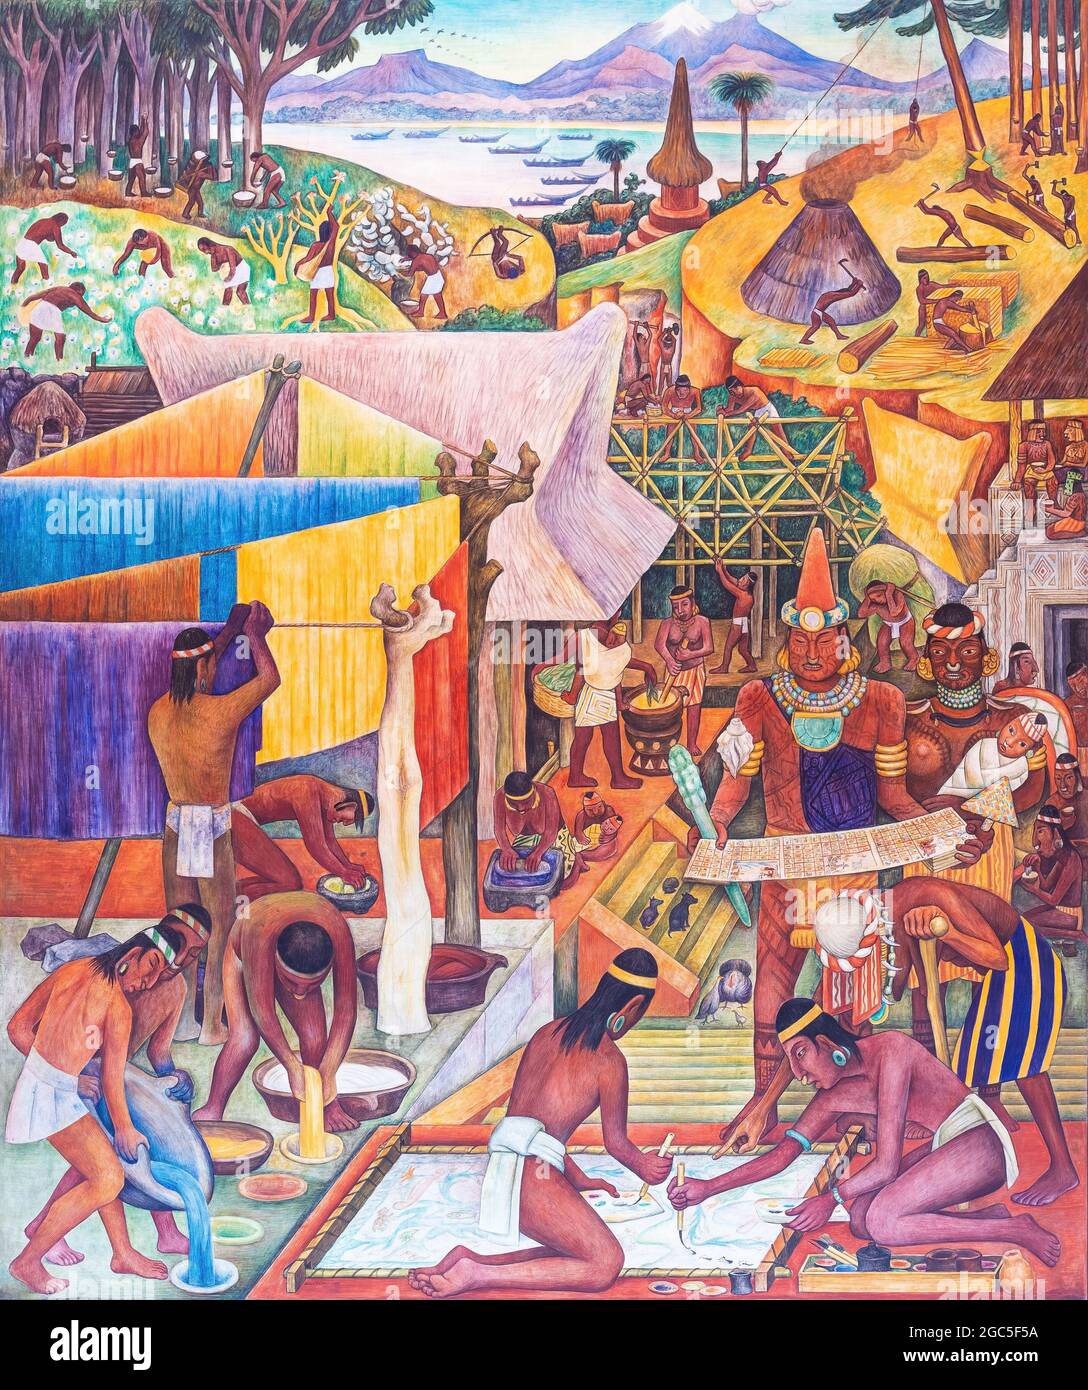 Diego Rivera Wandgemälde von Malern und Färsen in Tenochtitlan, Präsidentenpalast, Mexiko-Stadt, Mexiko. Stockfoto